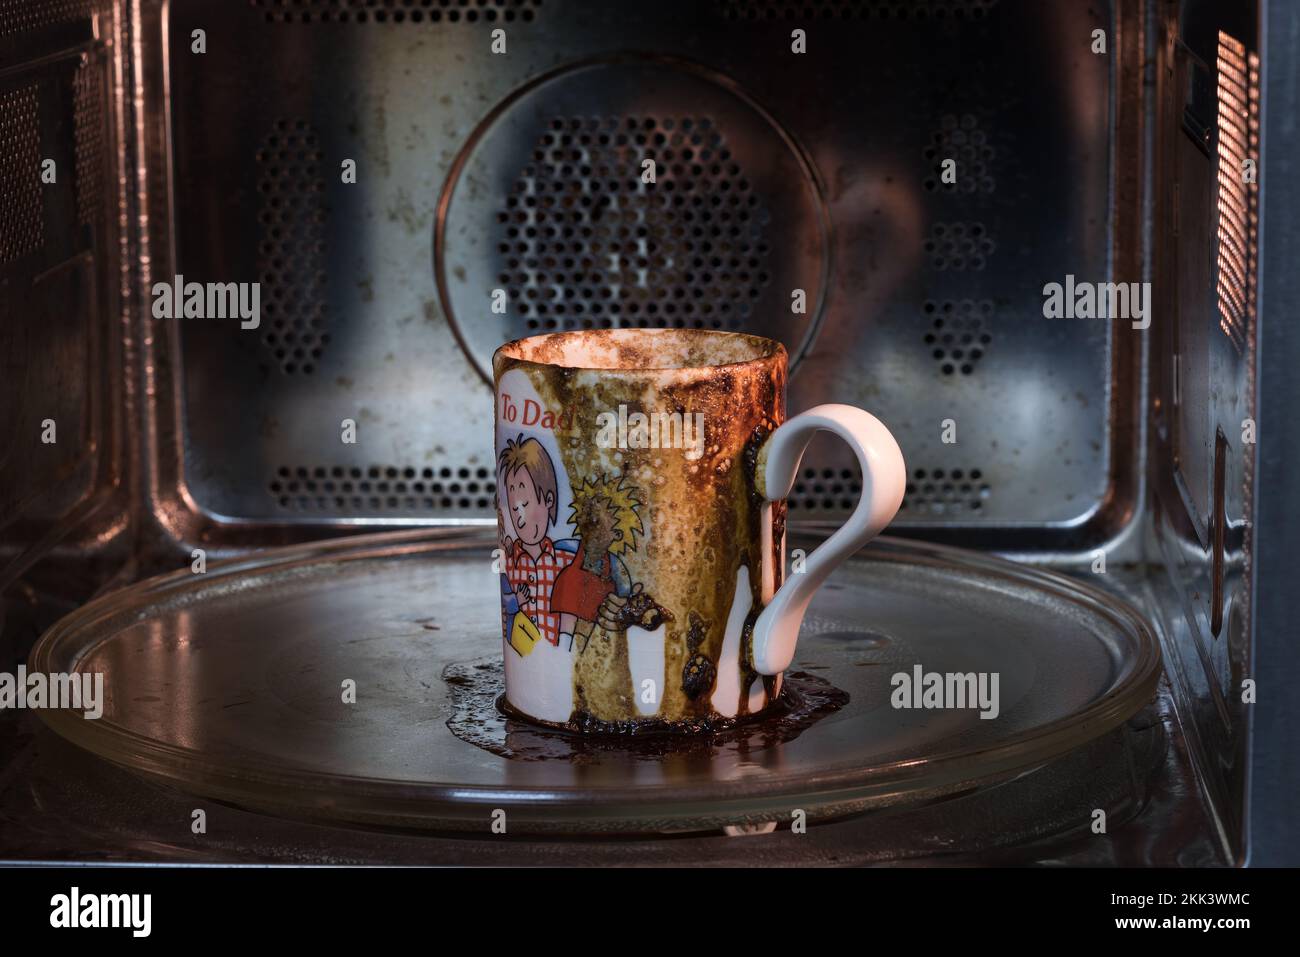 Verschüttetes Kaffeegetränk lief in der Mikrowelle über und verursachte so ein großes Chaos, das weggeräumt wurde, weil es vergessen wurde, und legte die falsche Einstellung ein, um zu viele Dinge beim Multitasking zu jonglieren Stockfoto